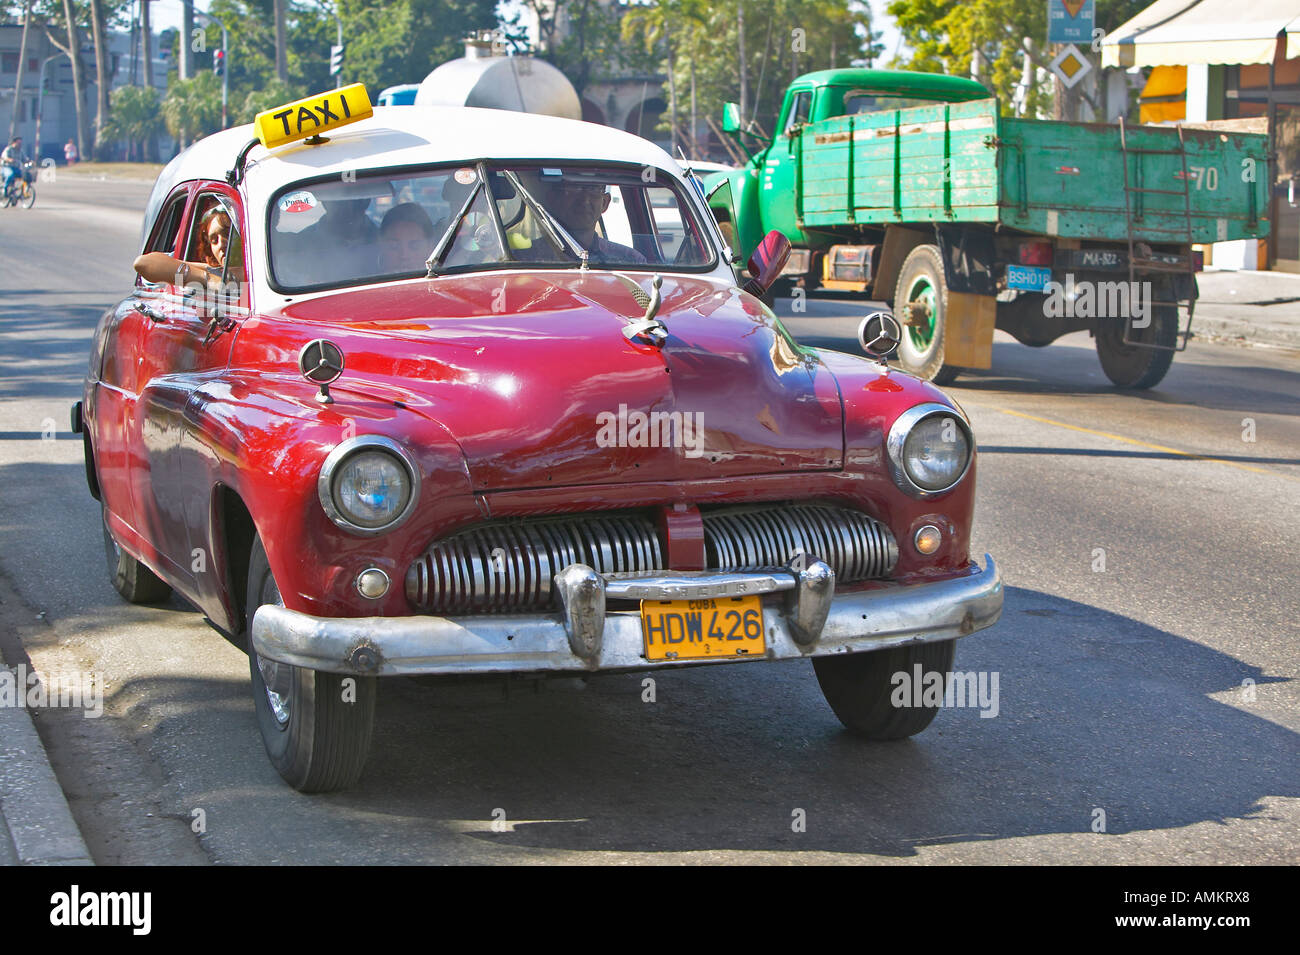 Alte rote Taxi fahren durch die Straßen von Havanna Kuba Stockfoto